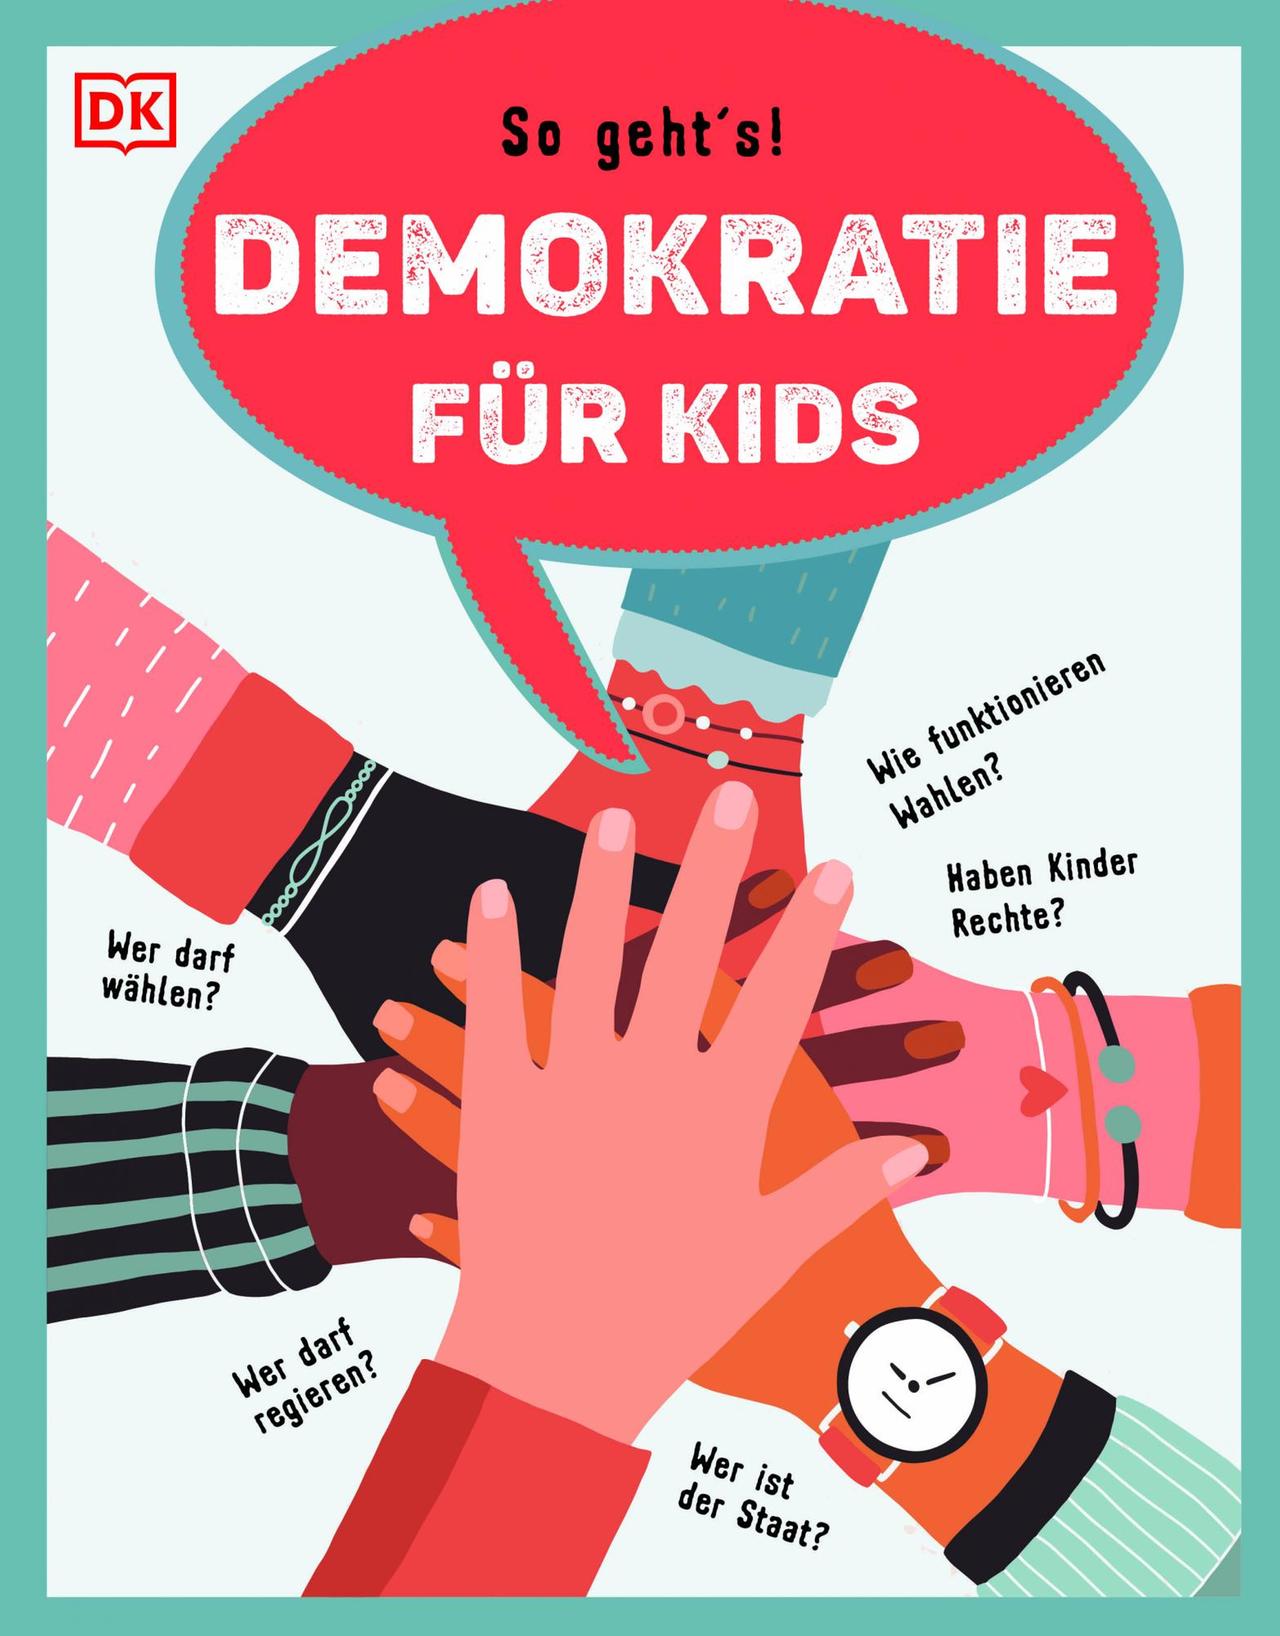 Buchcover:Christine Paxmann: "So geht’s! Demokratie für Kids"